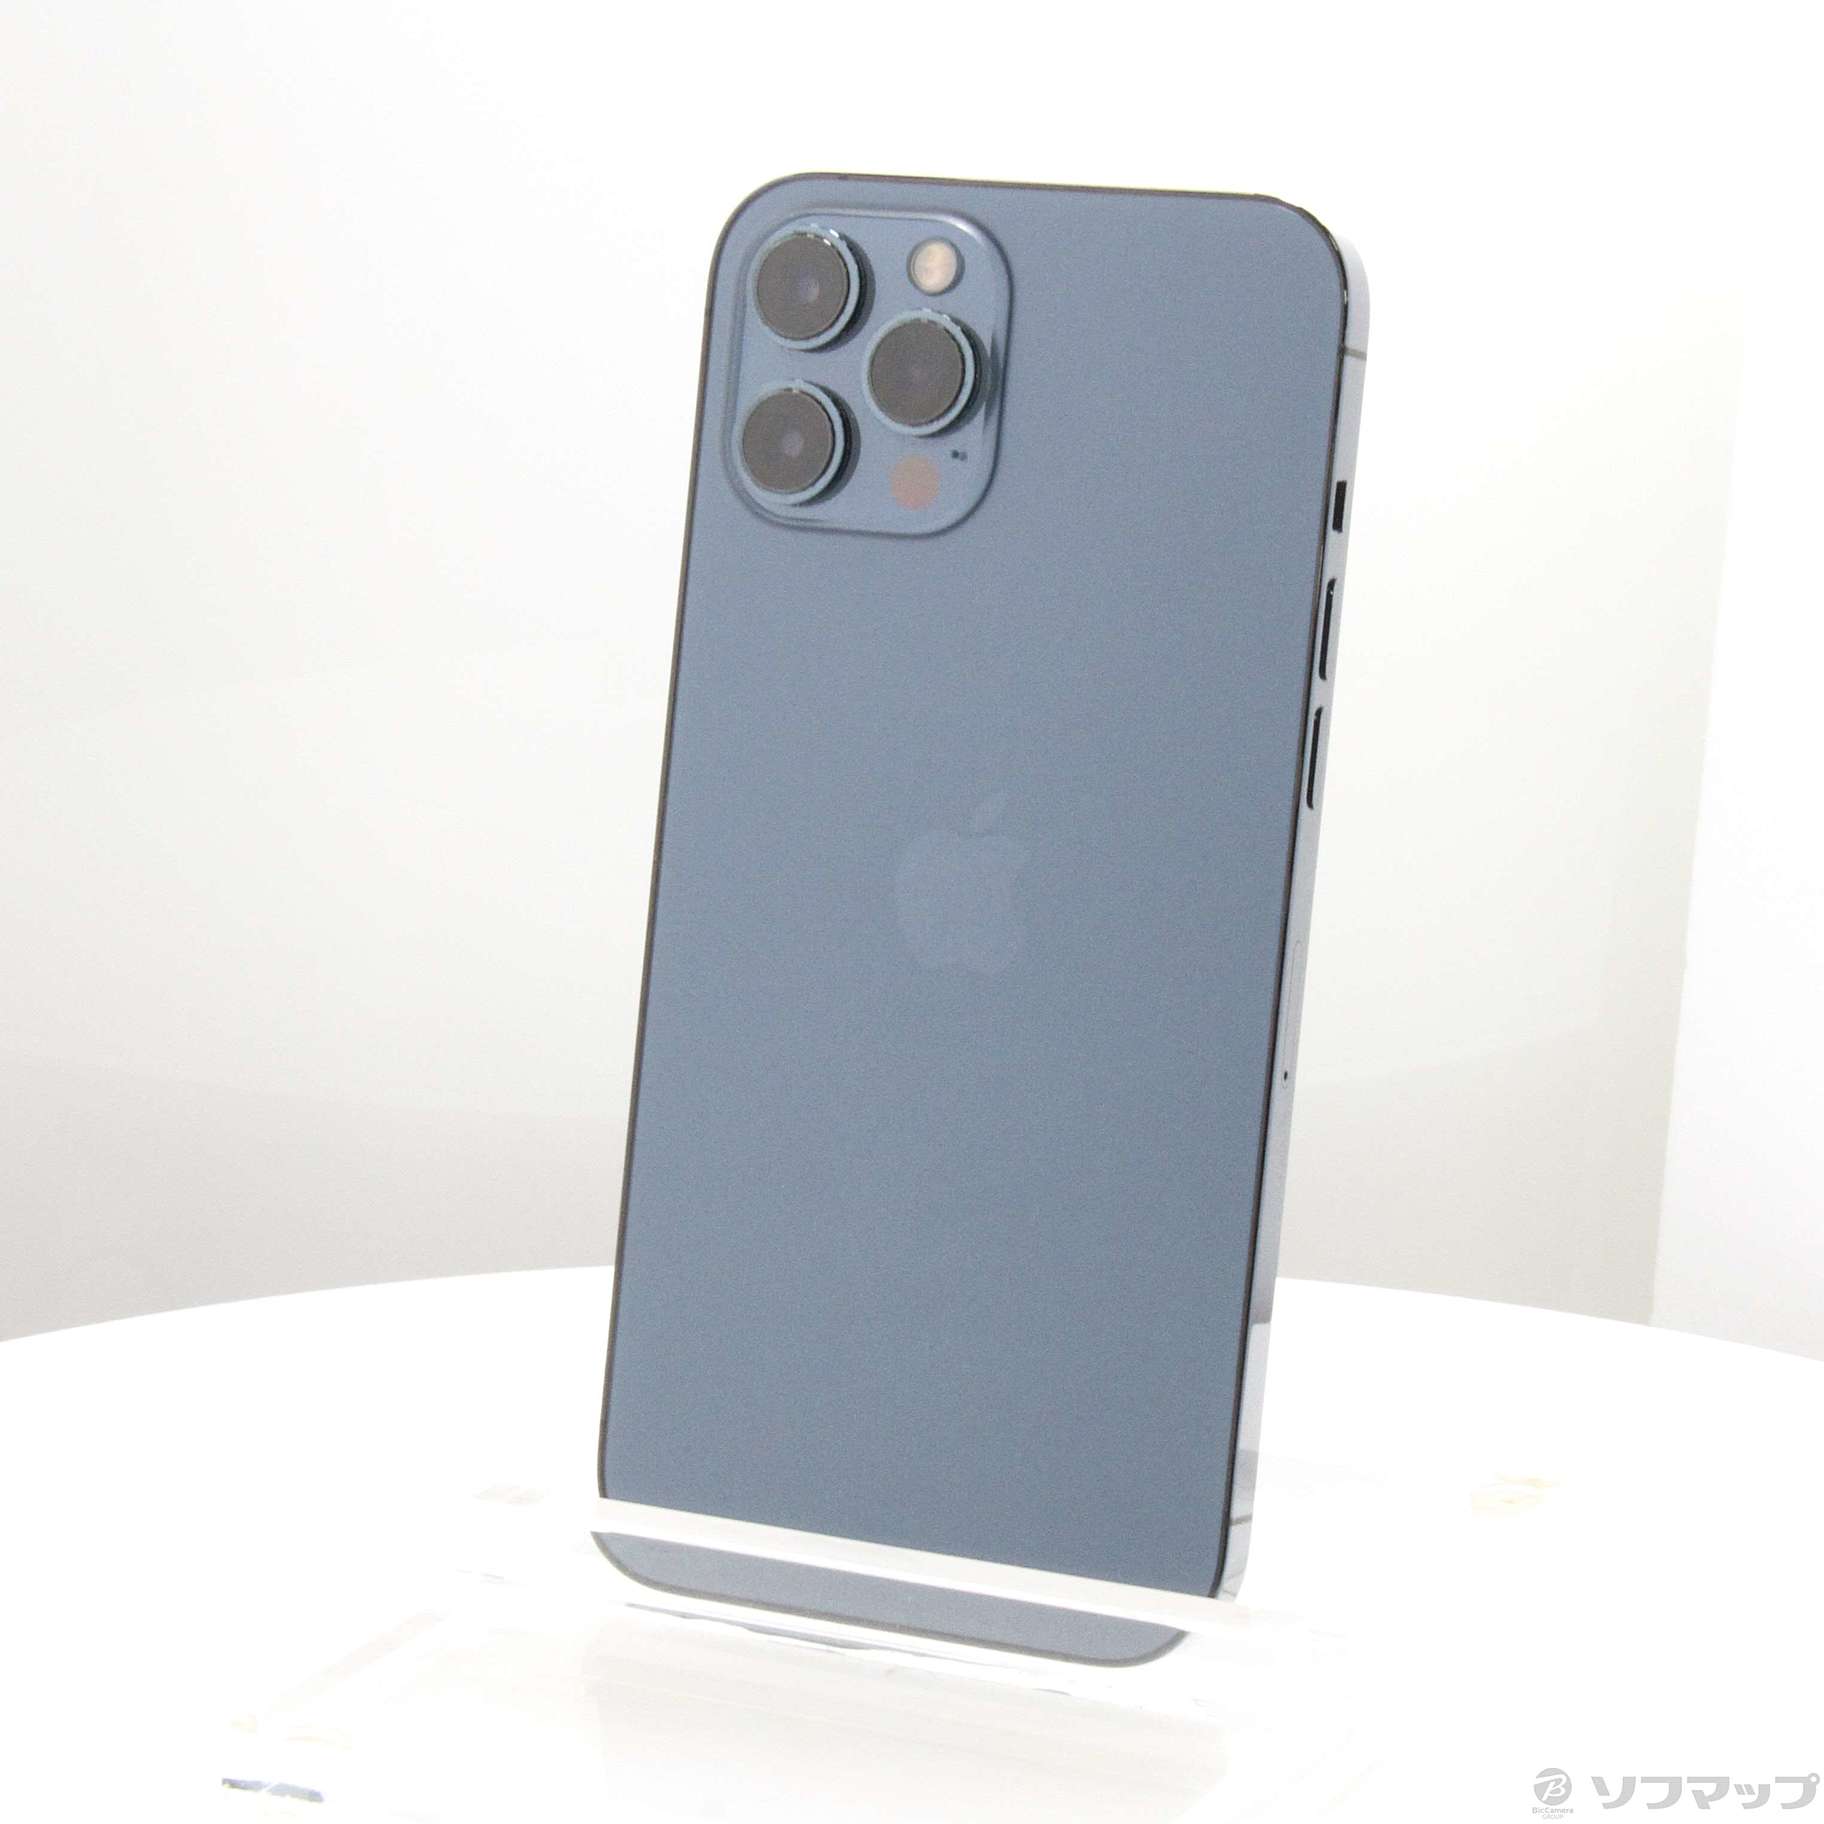 中古】セール対象品 iPhone12 Pro Max 512GB パシフィックブルー